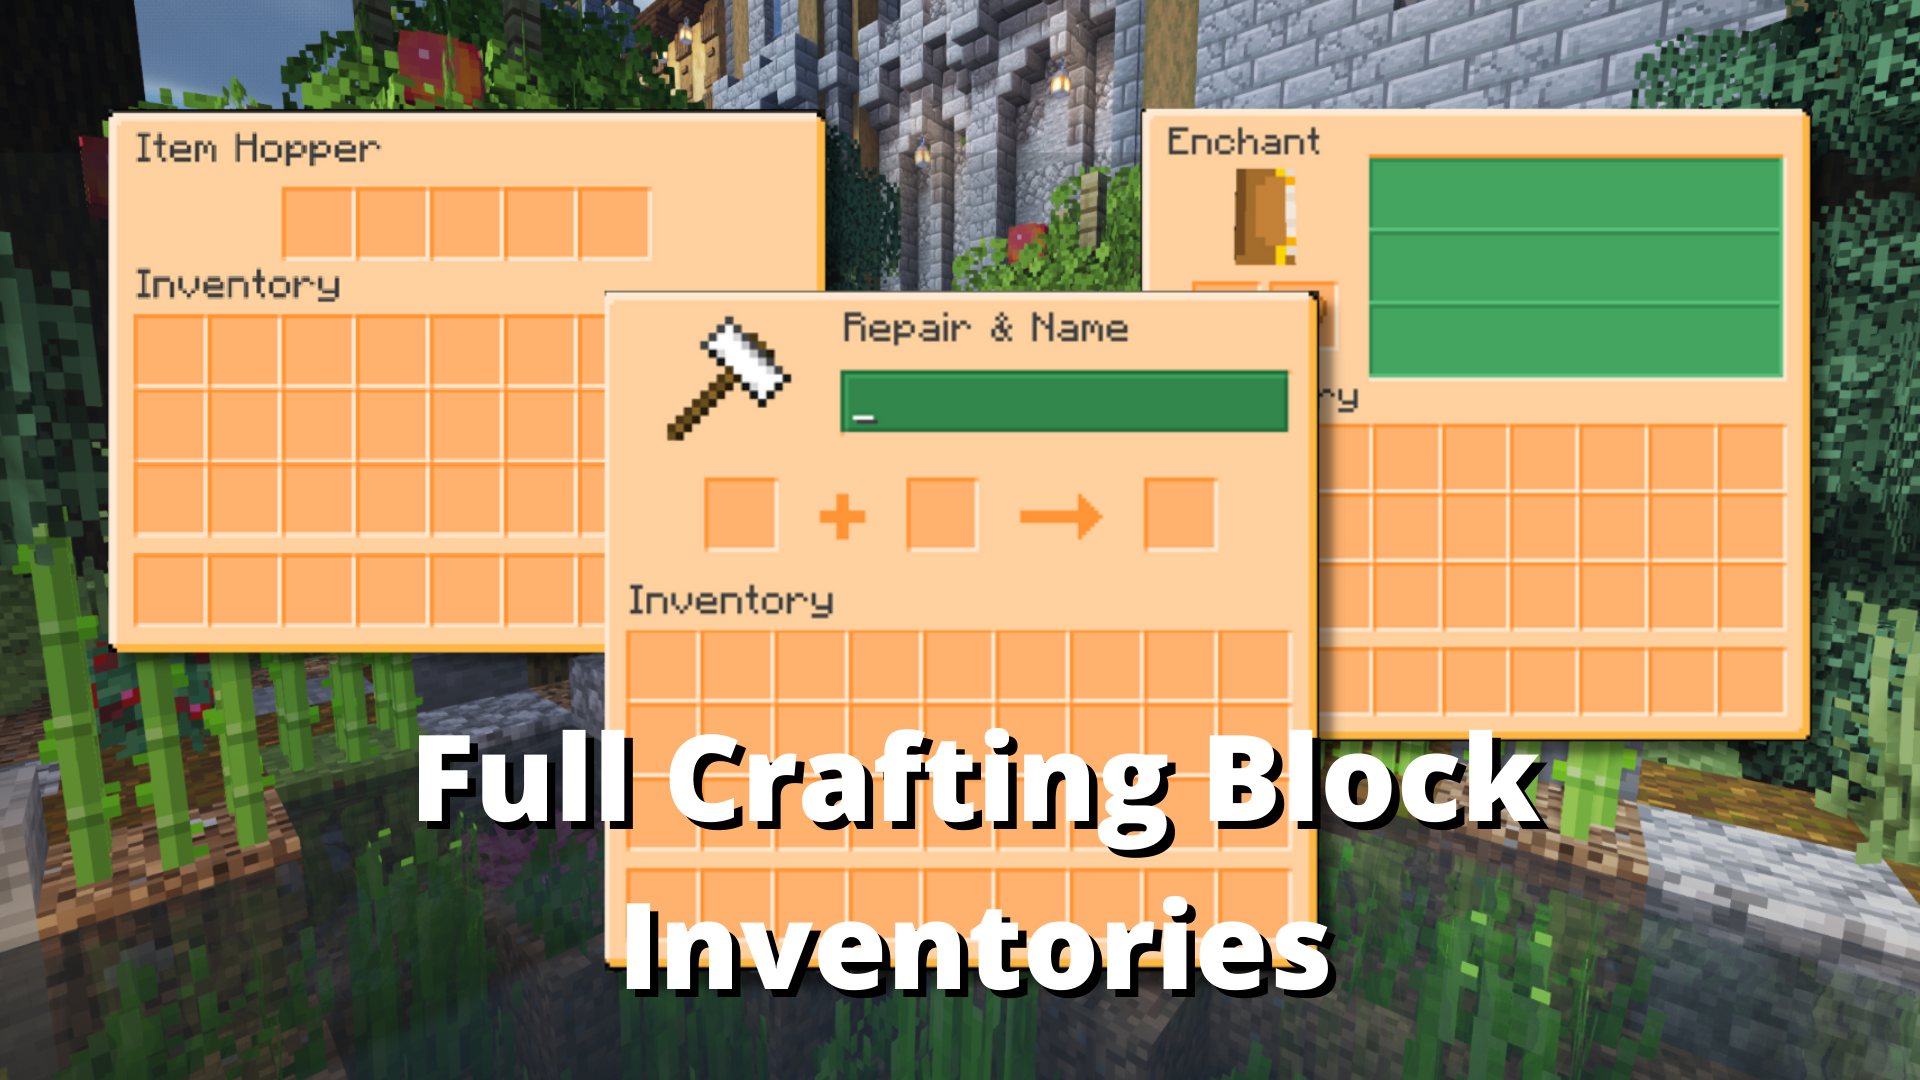 Full crafting blocks.